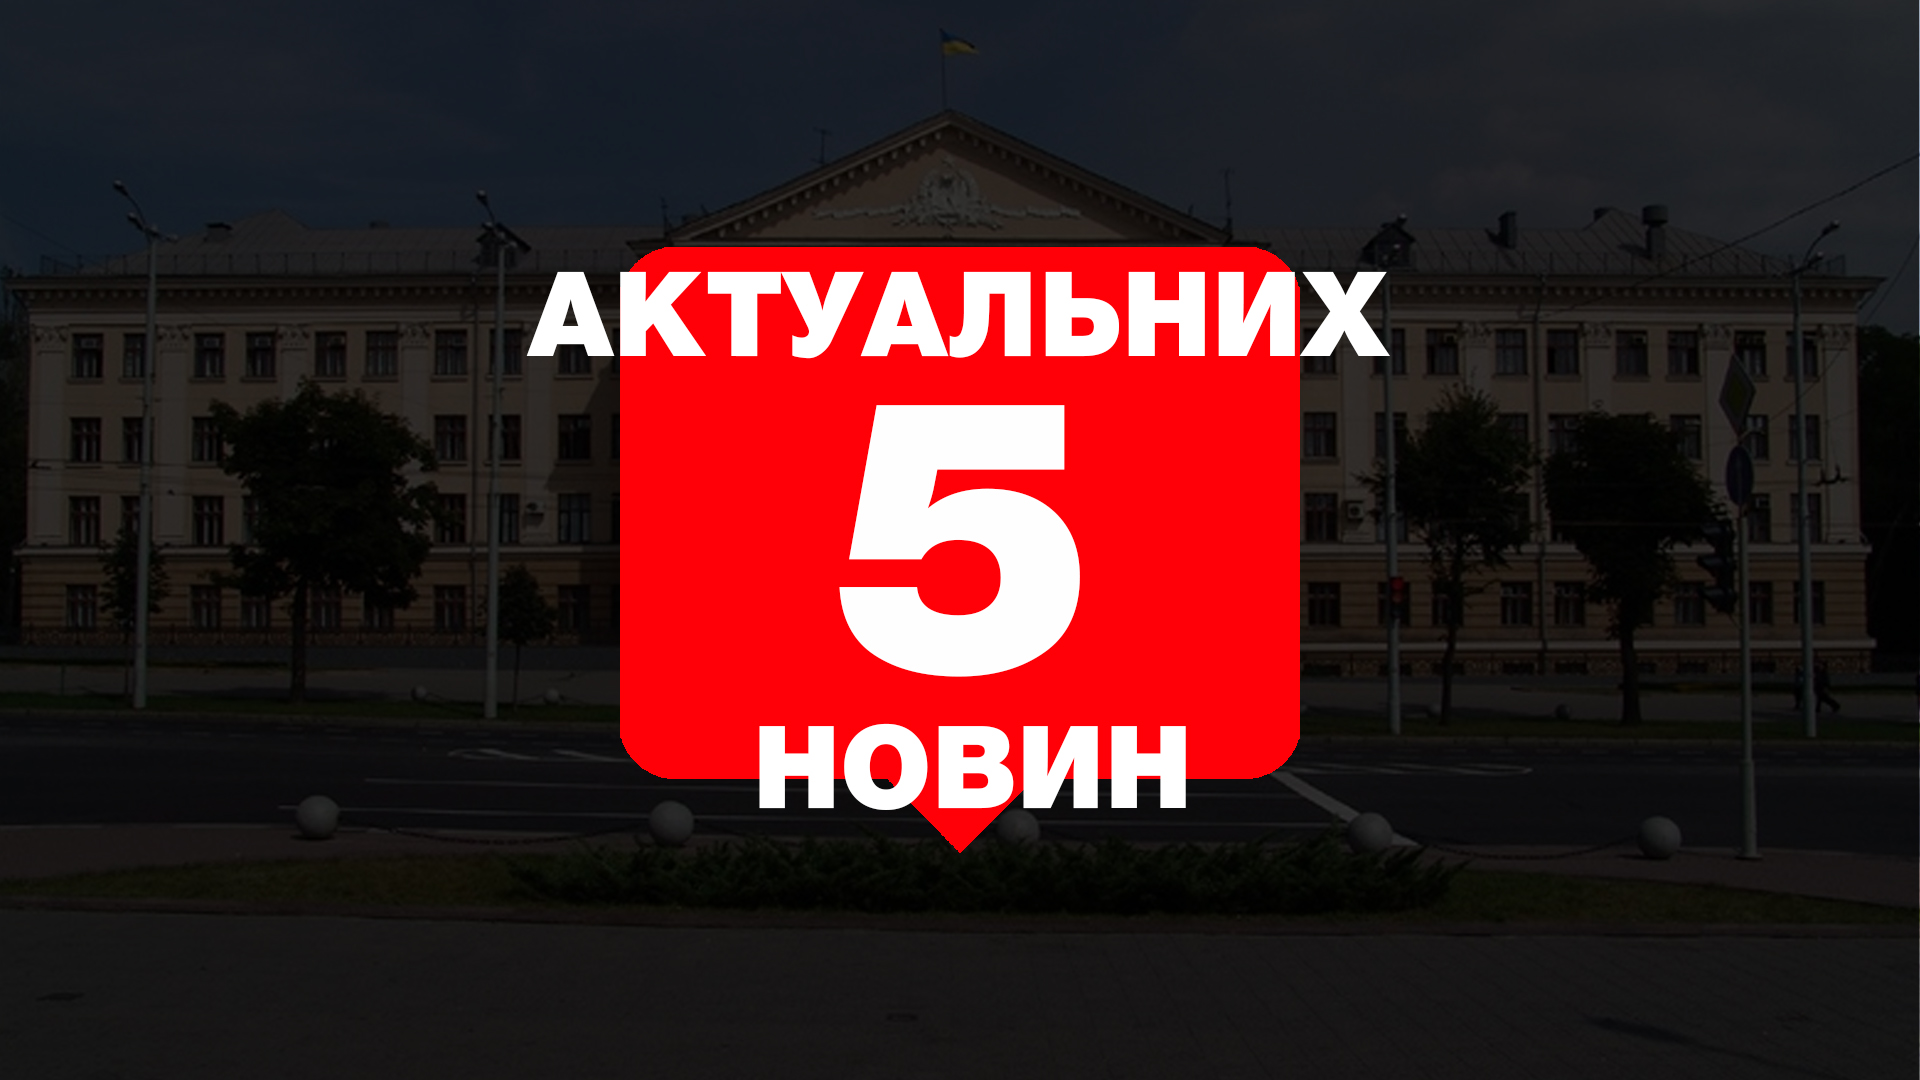 Визит Гриценко, масштабное отключение воды, инцидент с автомобилем запорожского активиста – 5 главных новостей Запорожья за среду